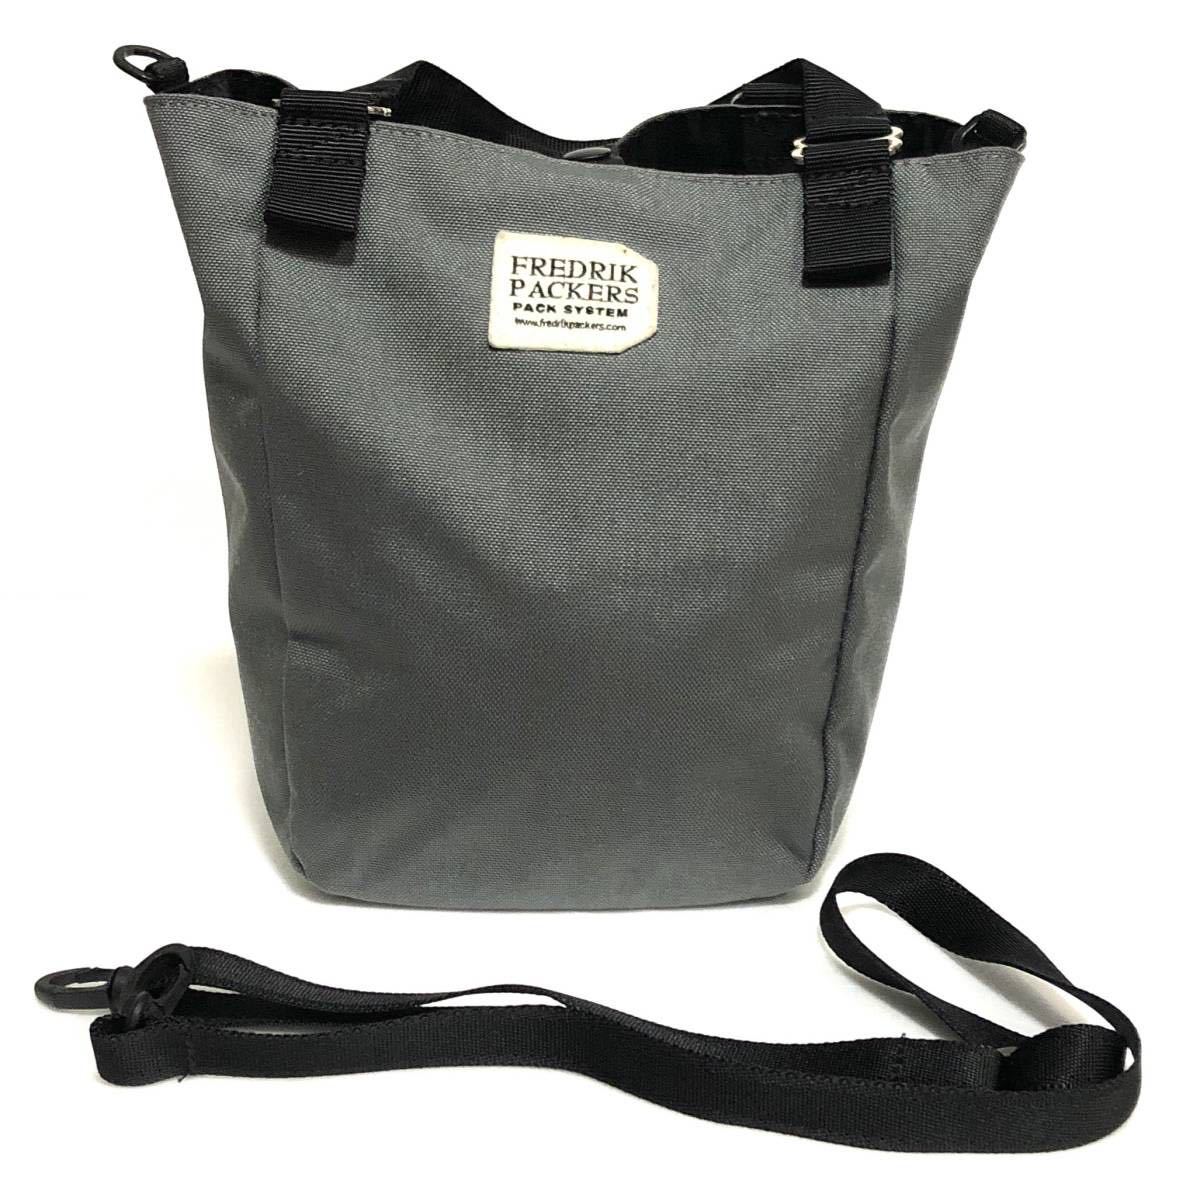 FREDRIK PACKERS Fredric paker z tote bag 2WAY gray 2307252 shoulder bag beautiful goods 